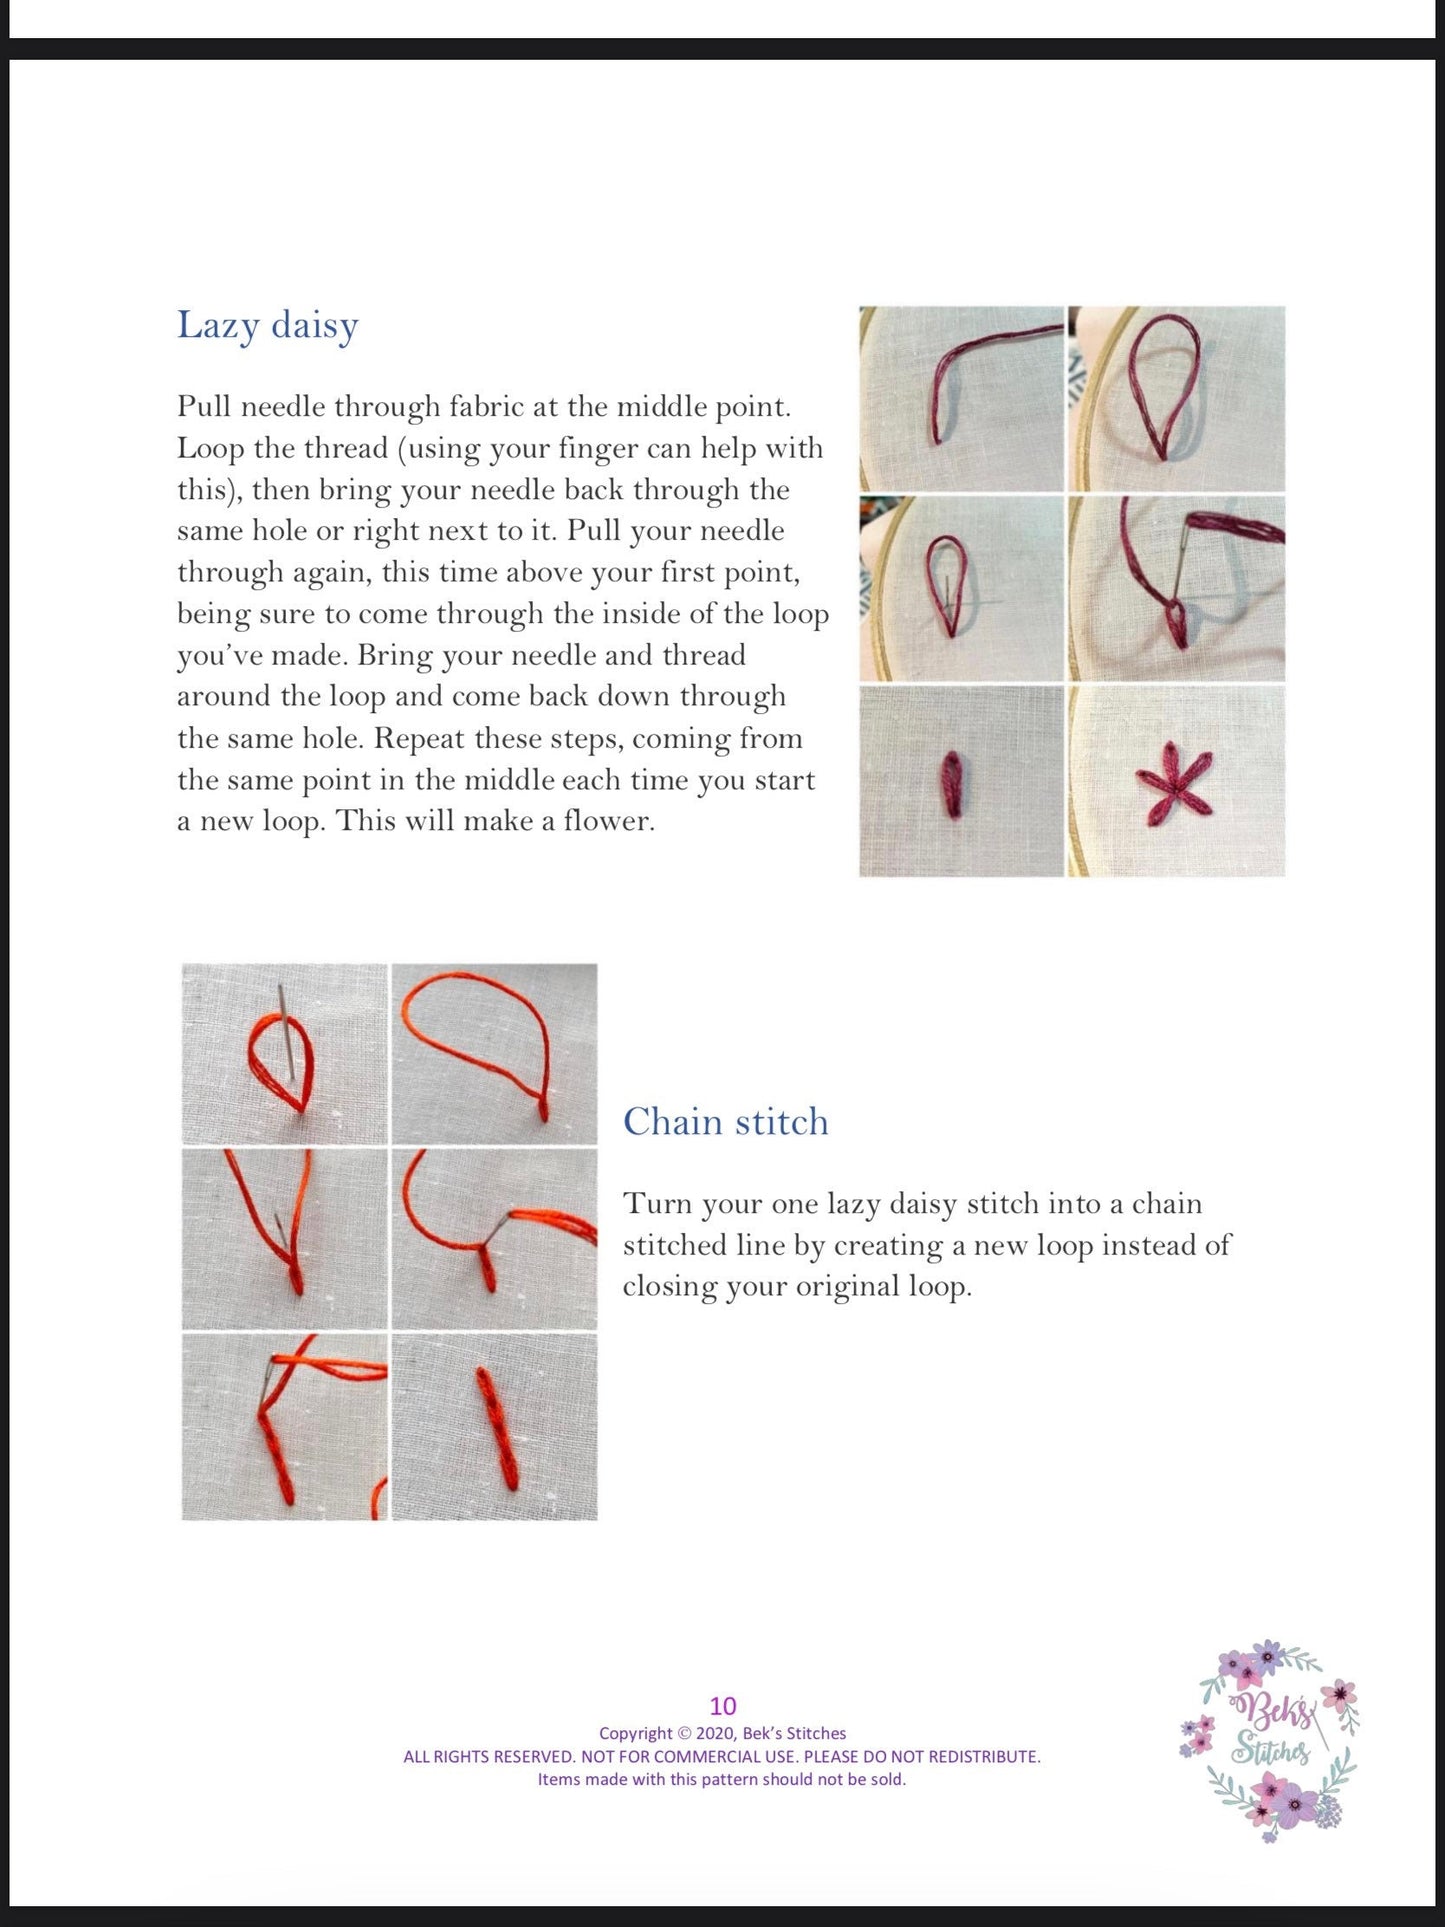 PDF Pattern - Frozen Florals, Intermediate Embroidery Pattern